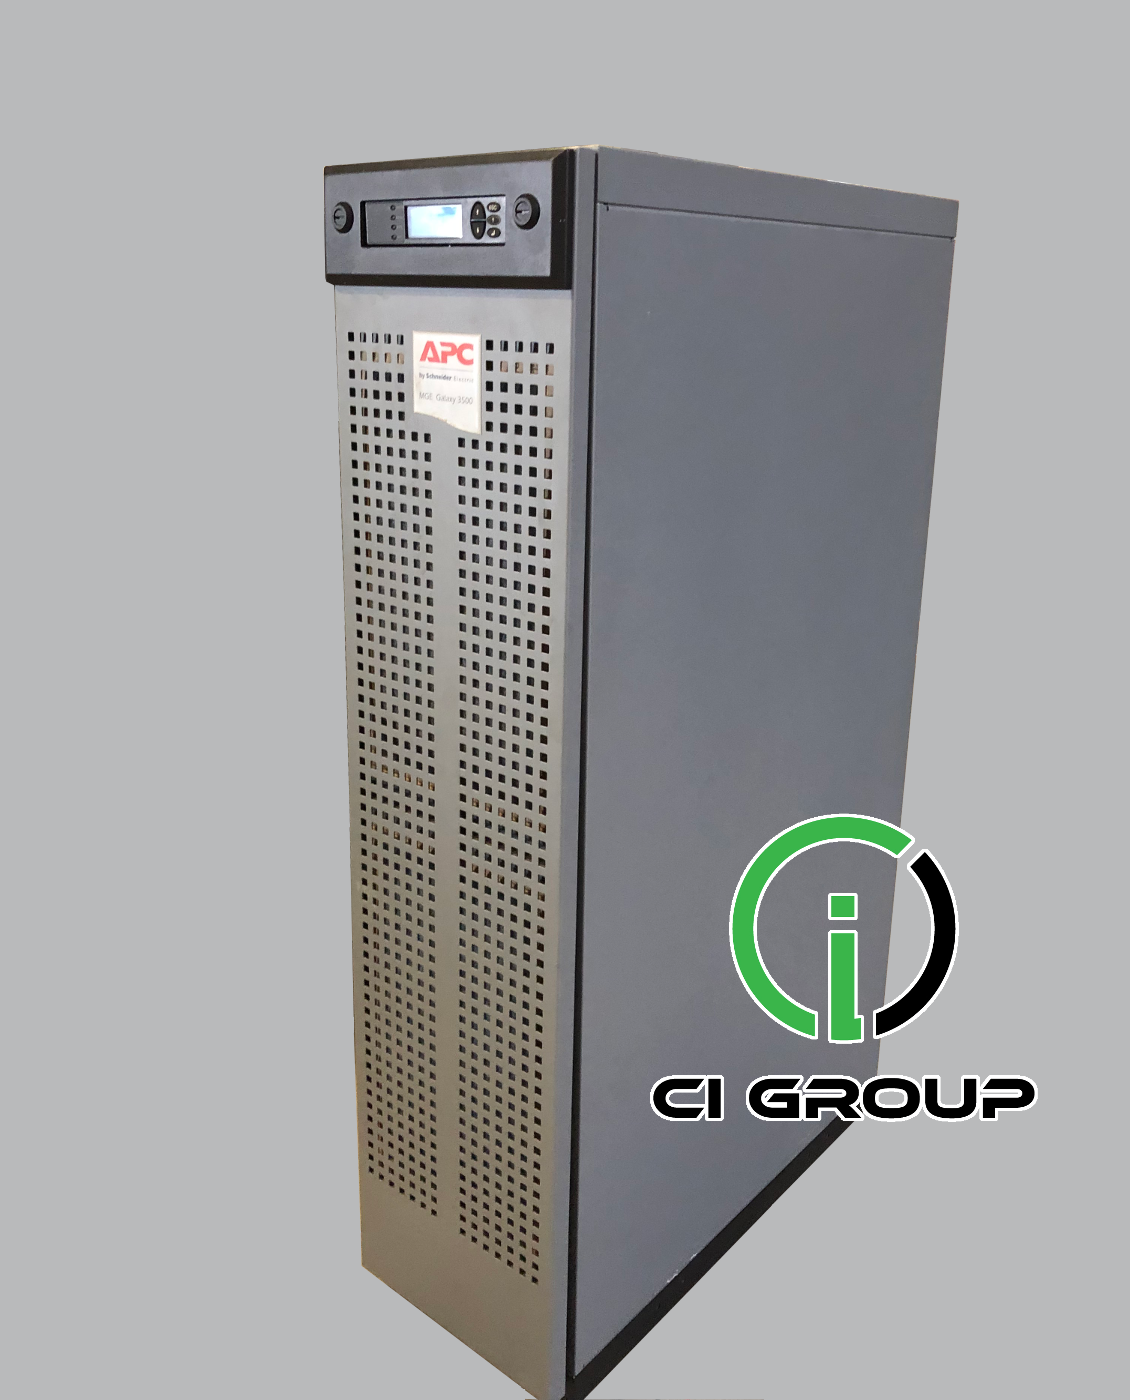 APC-GALAXY 3500-15 KVA ( Smart UPS VT 15 )